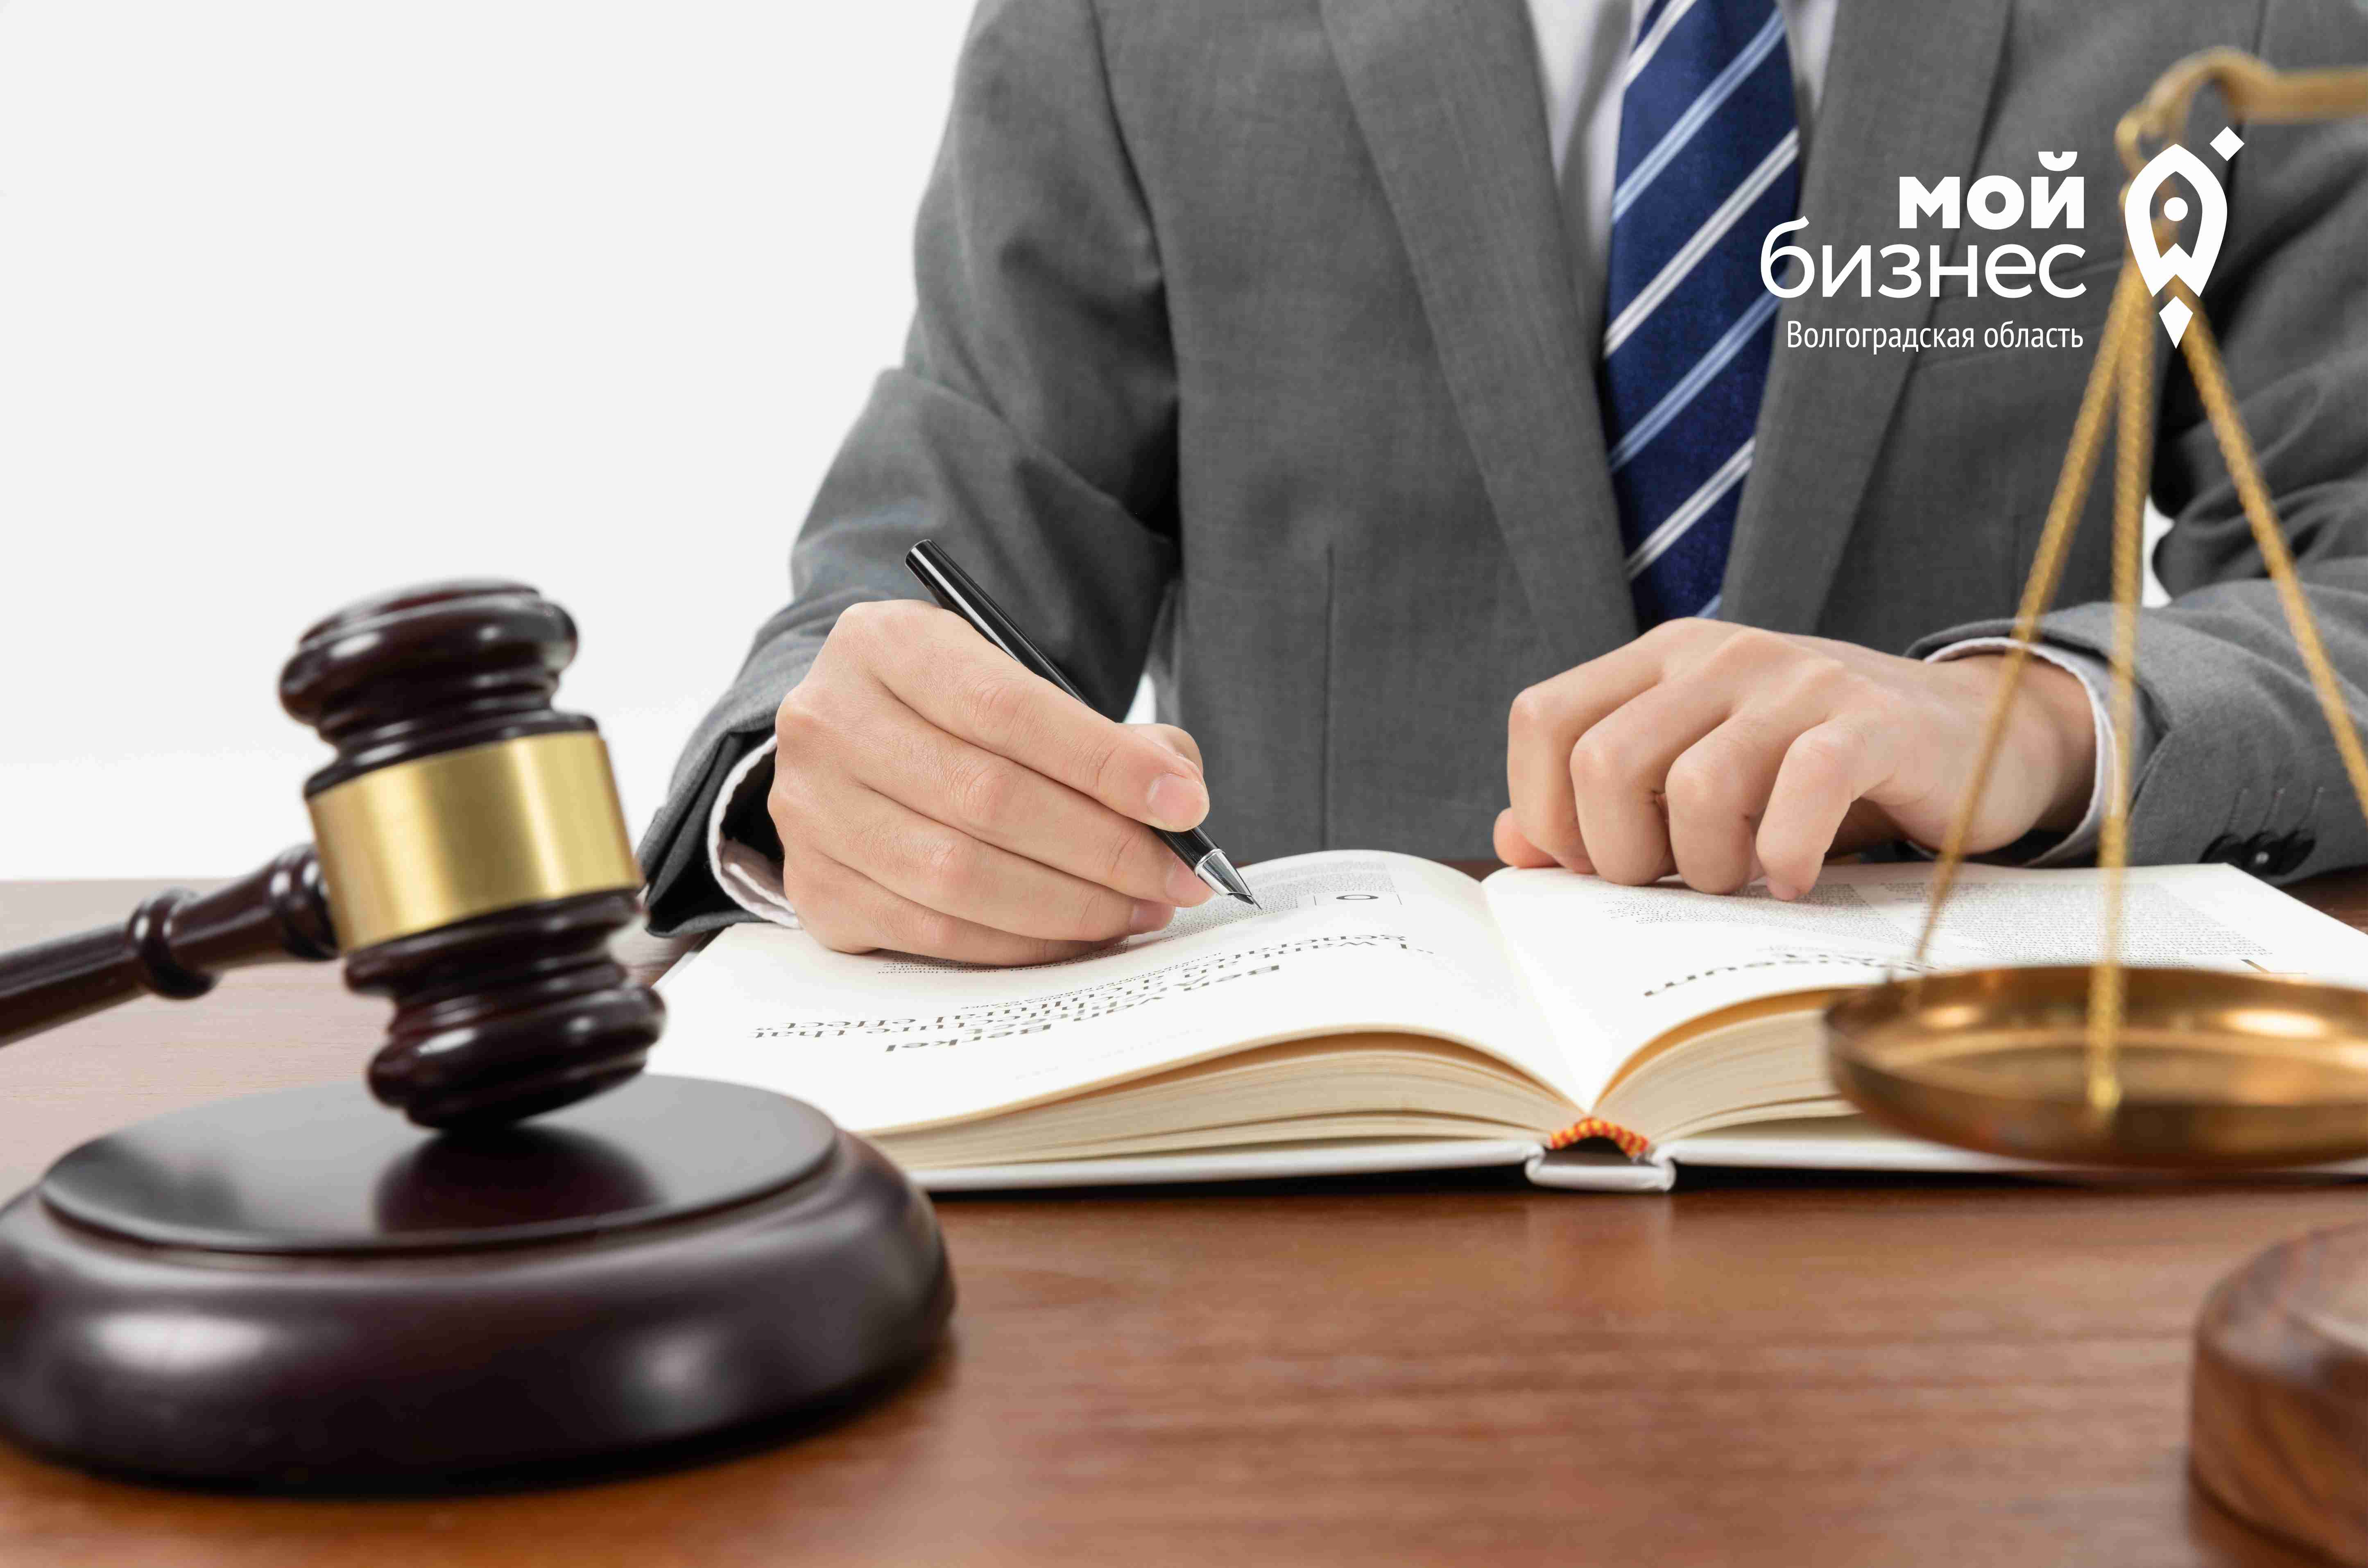 Бесплатная процедура внесудебного банкротства теперь доступна новым категориям граждан России